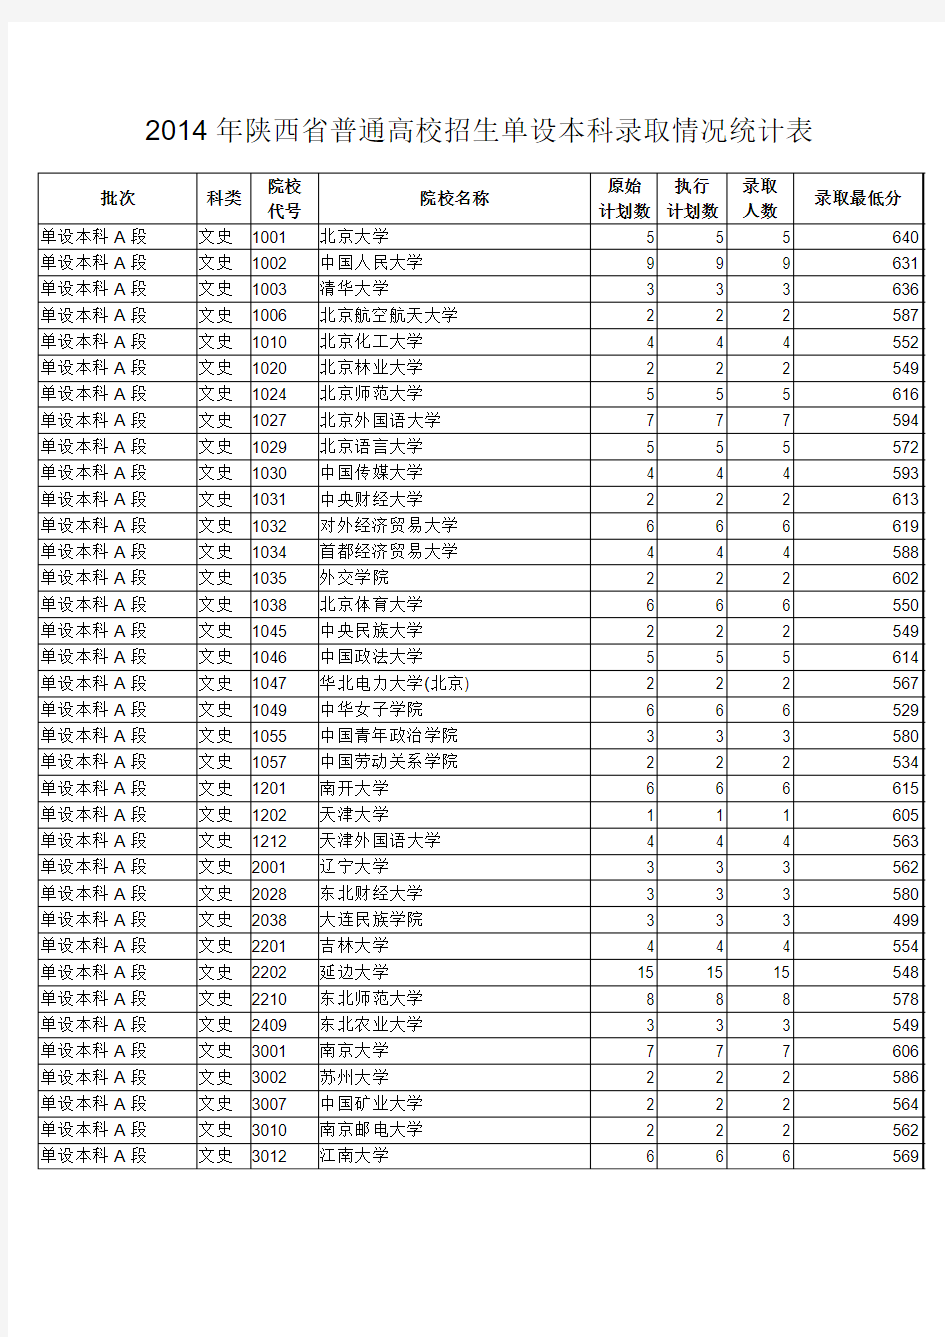 2014年陕西省普通高校招生单设本科录取情况统计表